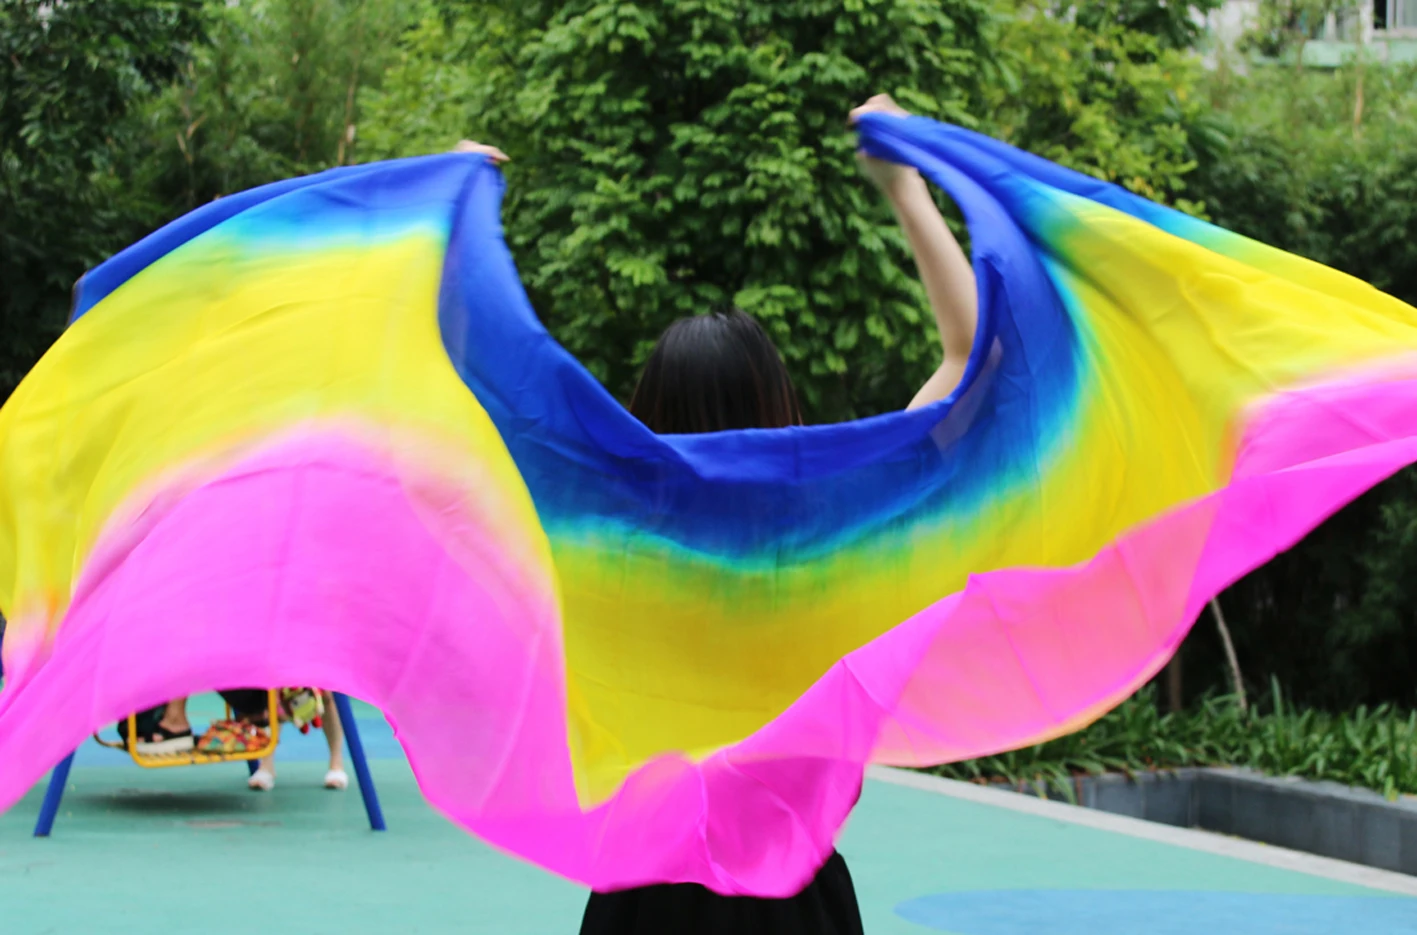 Шелк танец живота Танцы вуаль для ориентального танца шаль шарф для занятий танцами Оптовые Размеры и цвет могут быть выполнены по индивидуальному заказу - Цвет: As picture